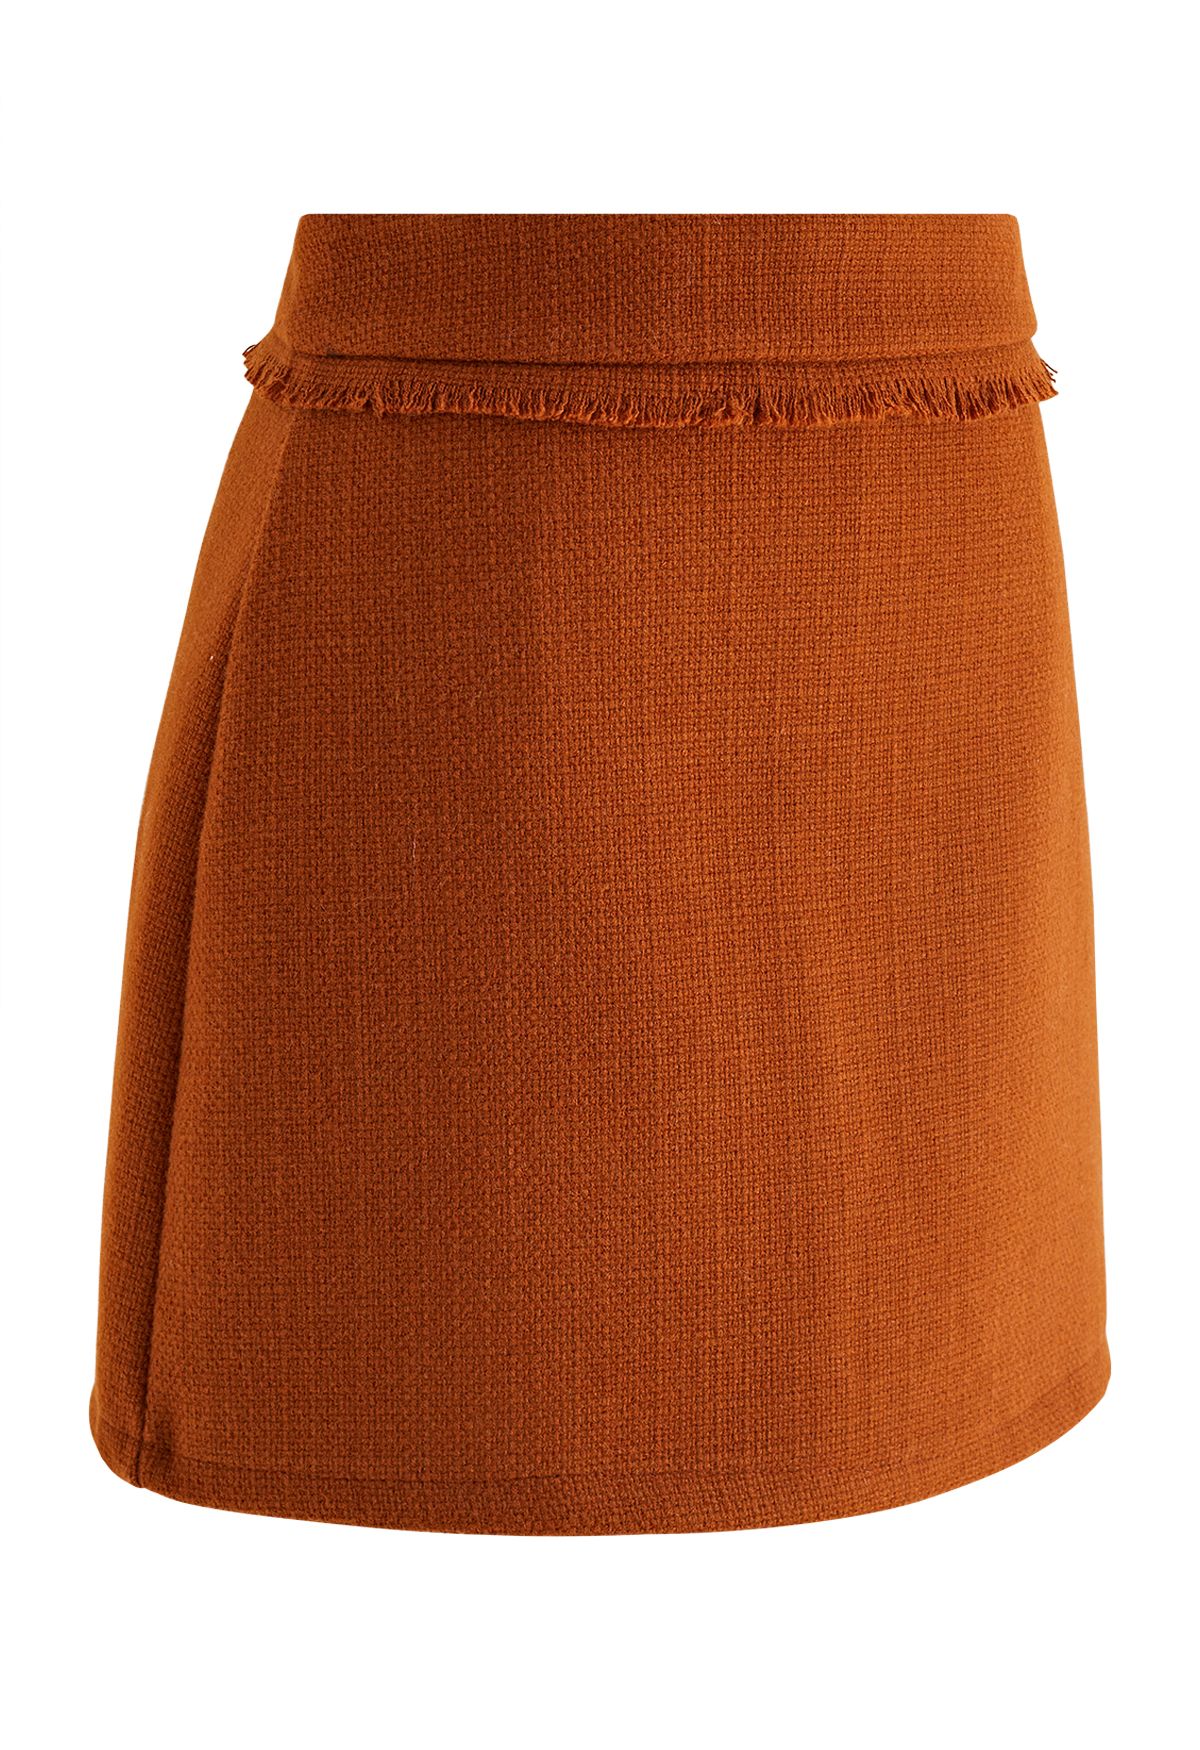 Fringe Trim Tweed Mini Bud Skirt in Orange - Retro, Indie and Unique ...